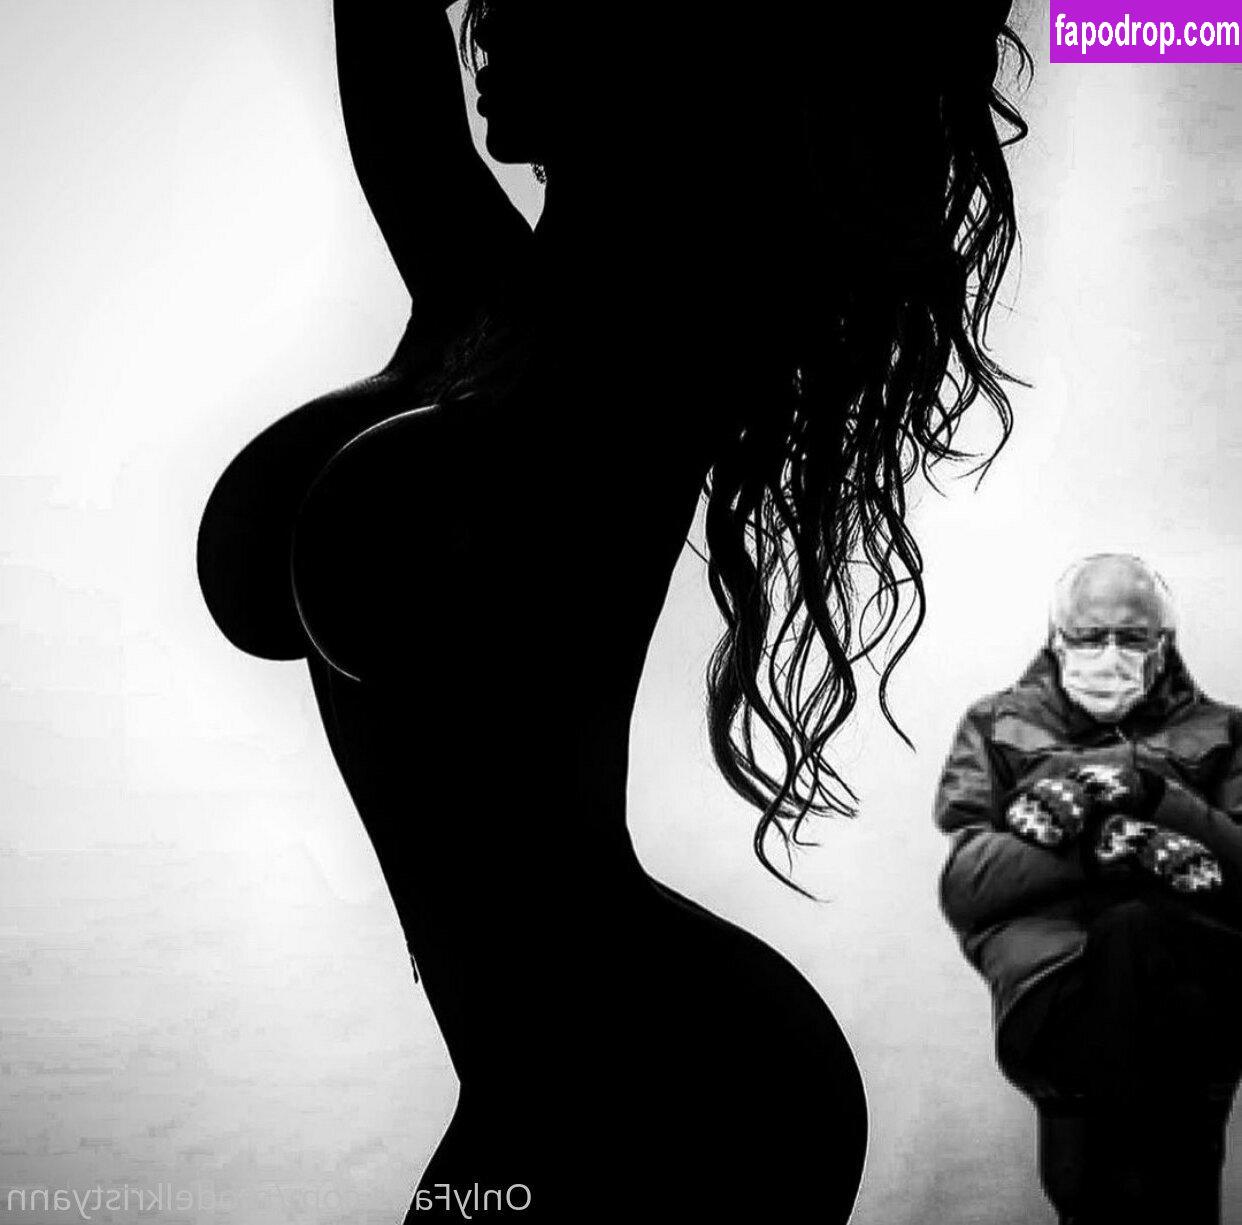 Kristy Ann / modelkristyann leak of nude photo #0267 from OnlyFans or Patreon